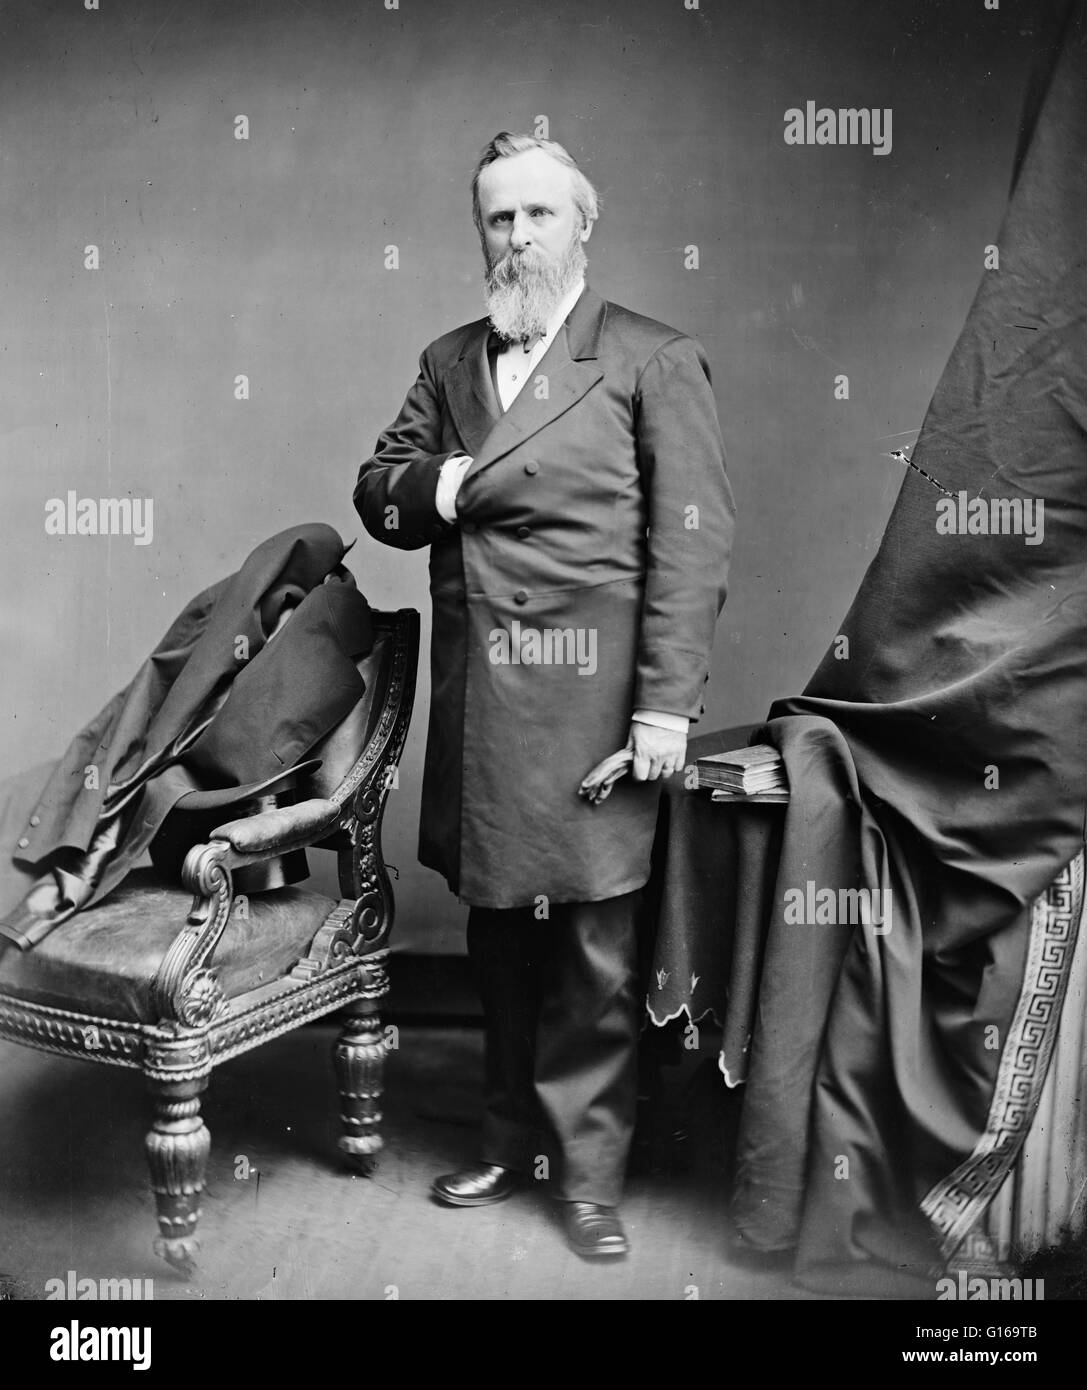 Rutherford Birchard Hayes (4 octobre 1822 - 17 janvier 1893) était le 19ème Président des États-Unis (1877-1881). Lorsque la guerre civile a commencé, il a quitté une carrière politique réussie à rejoindre l'Armée de l'Union en tant qu'officier. Blessé cinq fois, il a obtenu un r Banque D'Images